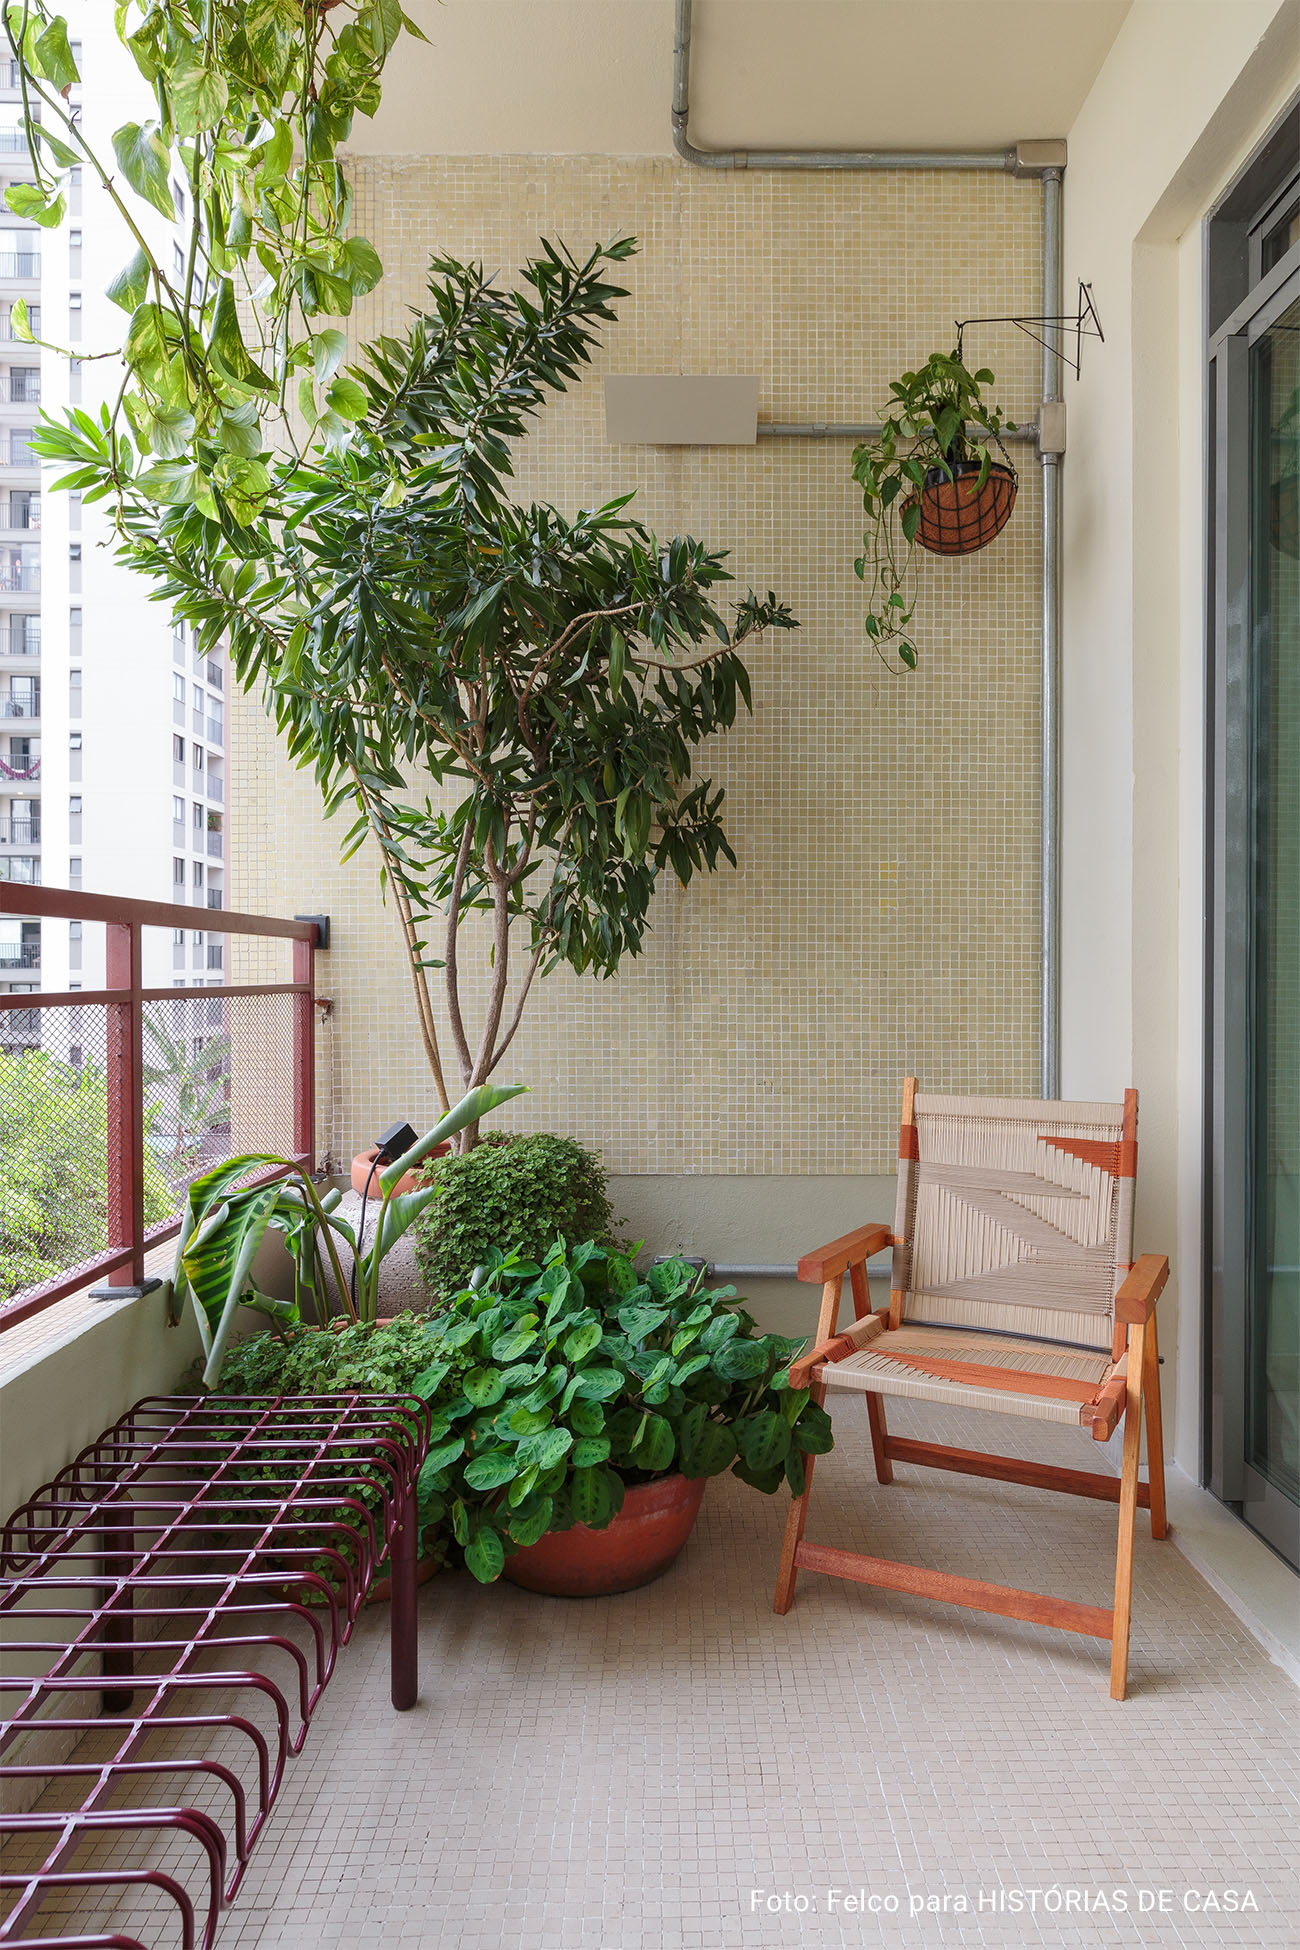 Apartamento conceito no Edifício Vírginia tem cozinha integrada, sacada com plantas, piso de taco e decoração com garimpos.